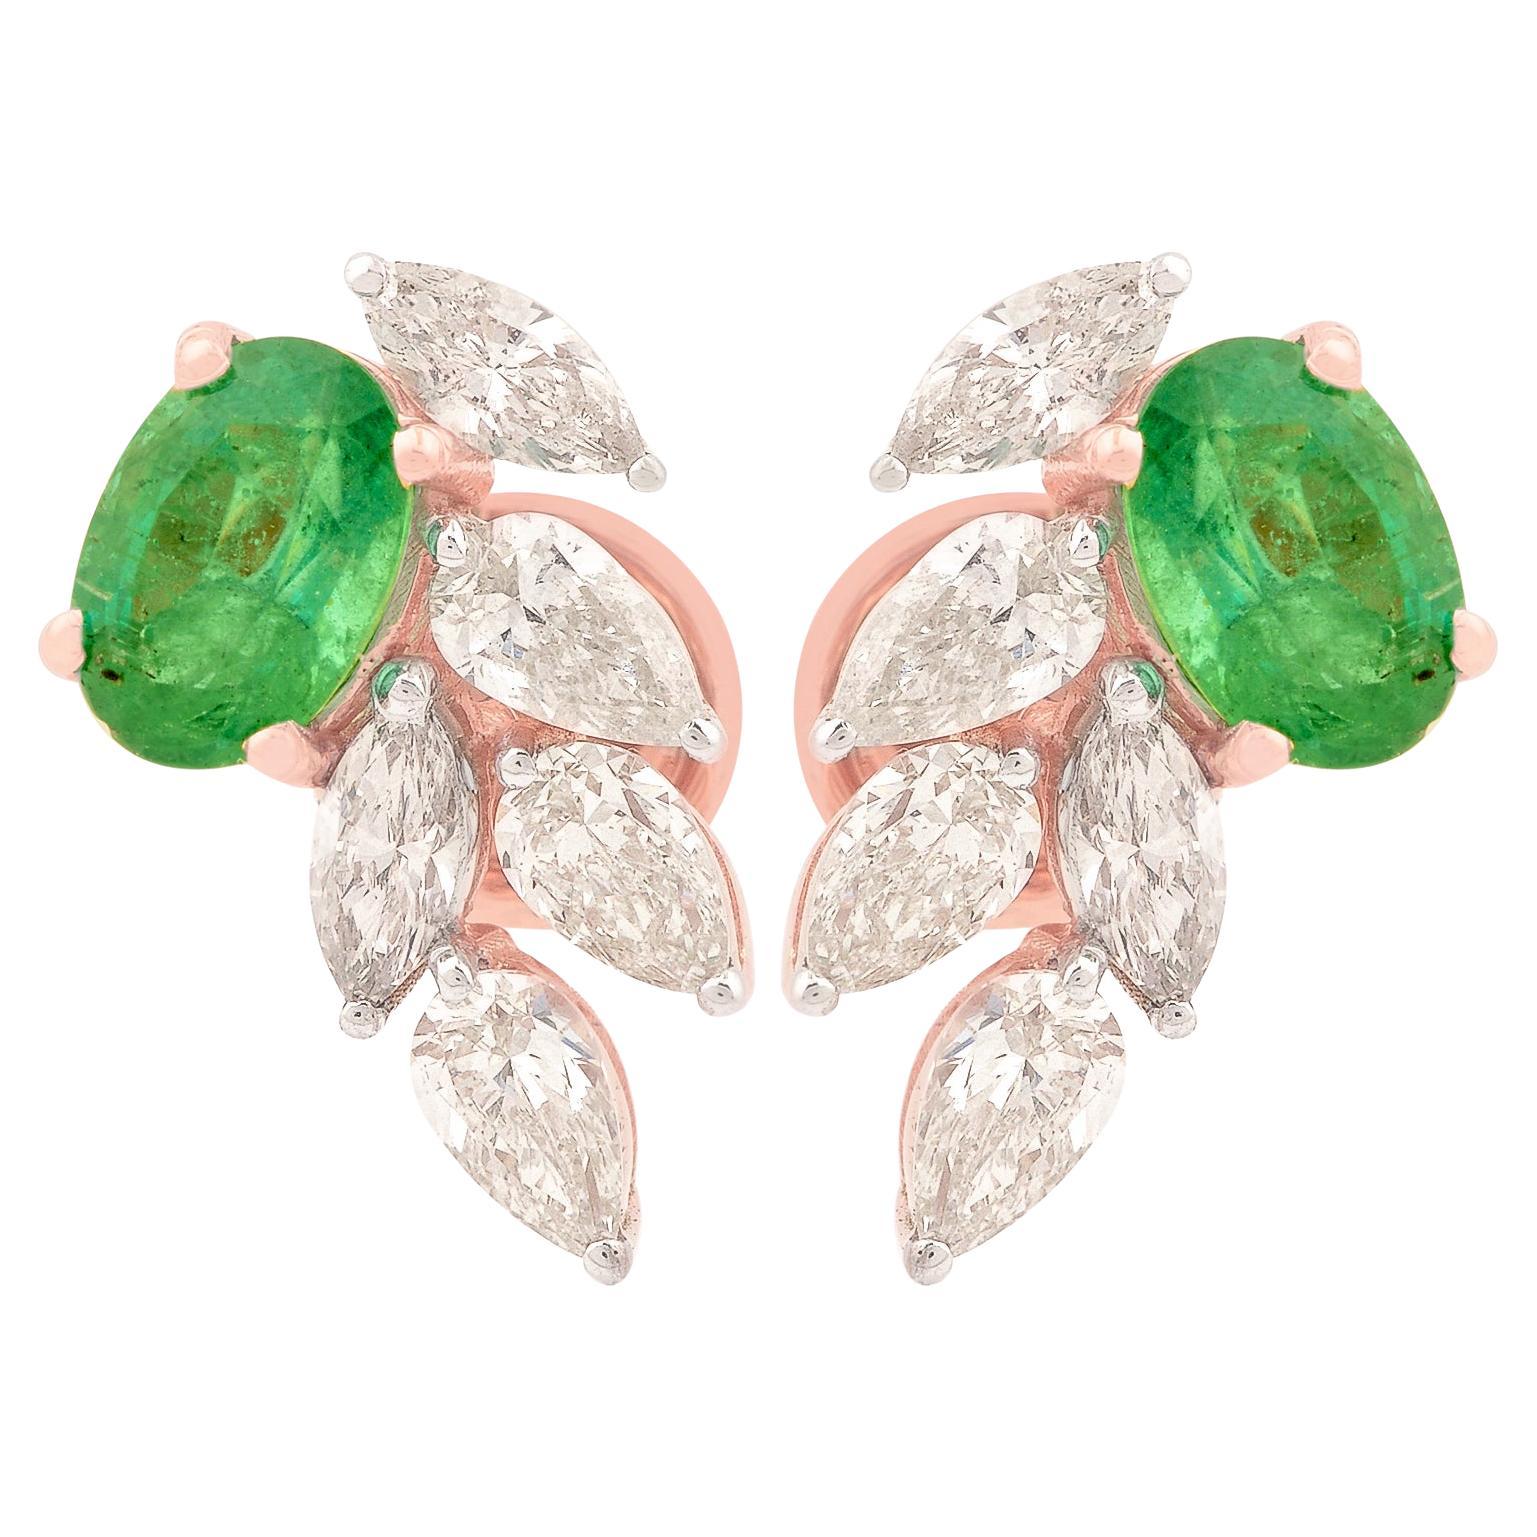 Oval Zambian Emerald Gemstone Stud Earrings Diamond 18 Karat Rose Gold Jewelry For Sale